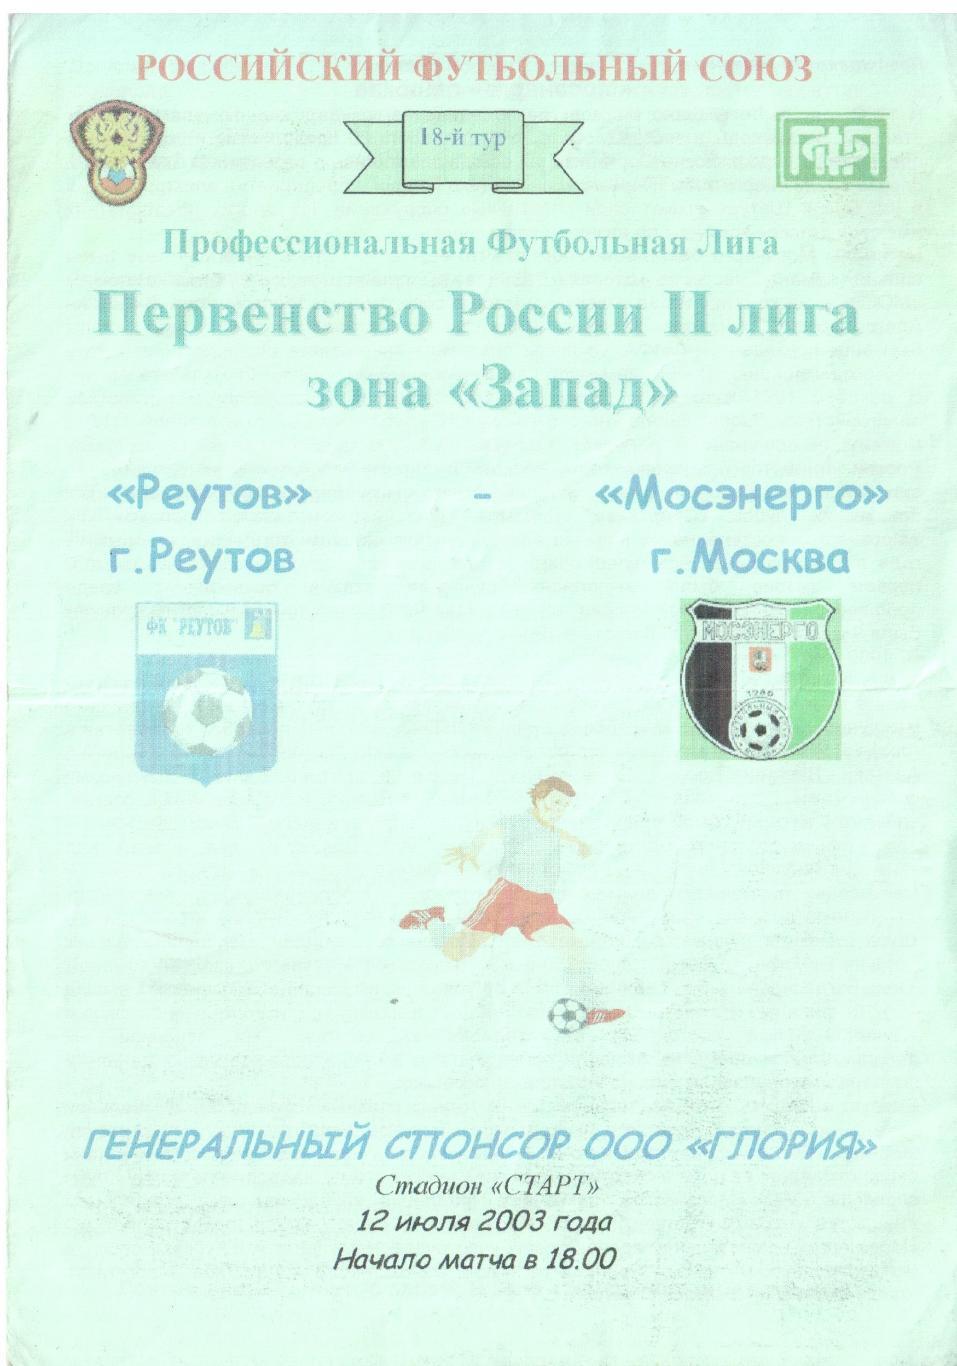 Реутов (Реутов) - Мосэнерго (Москва) 12.07.2003